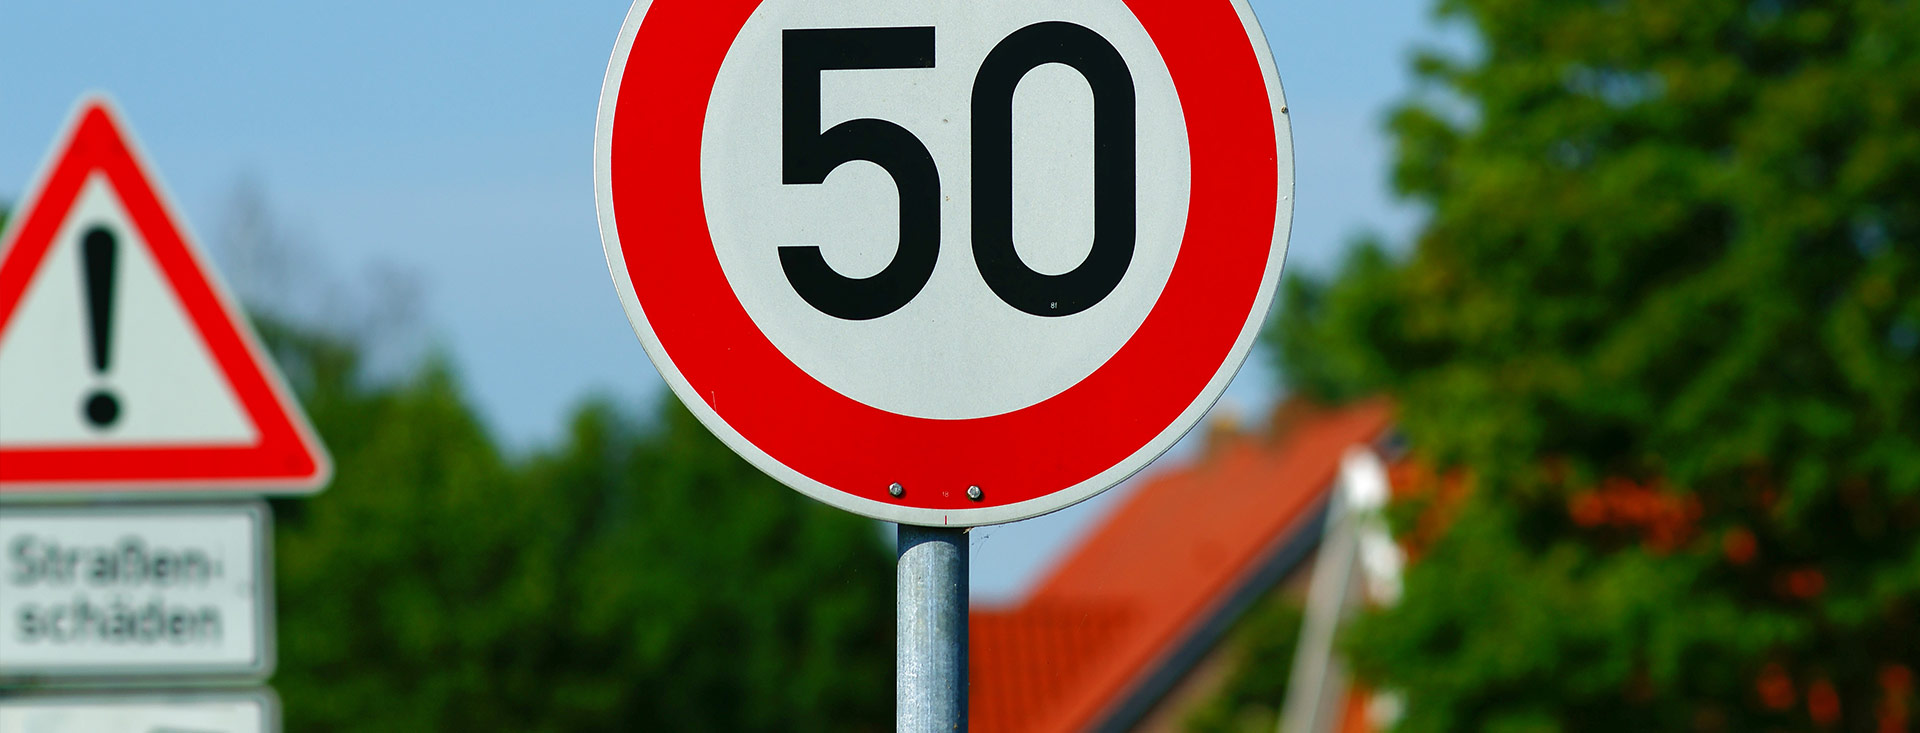 Vekehrschild mit Geschwindigkeitsbegrenzung auf 50 Kilometer pro Stunde